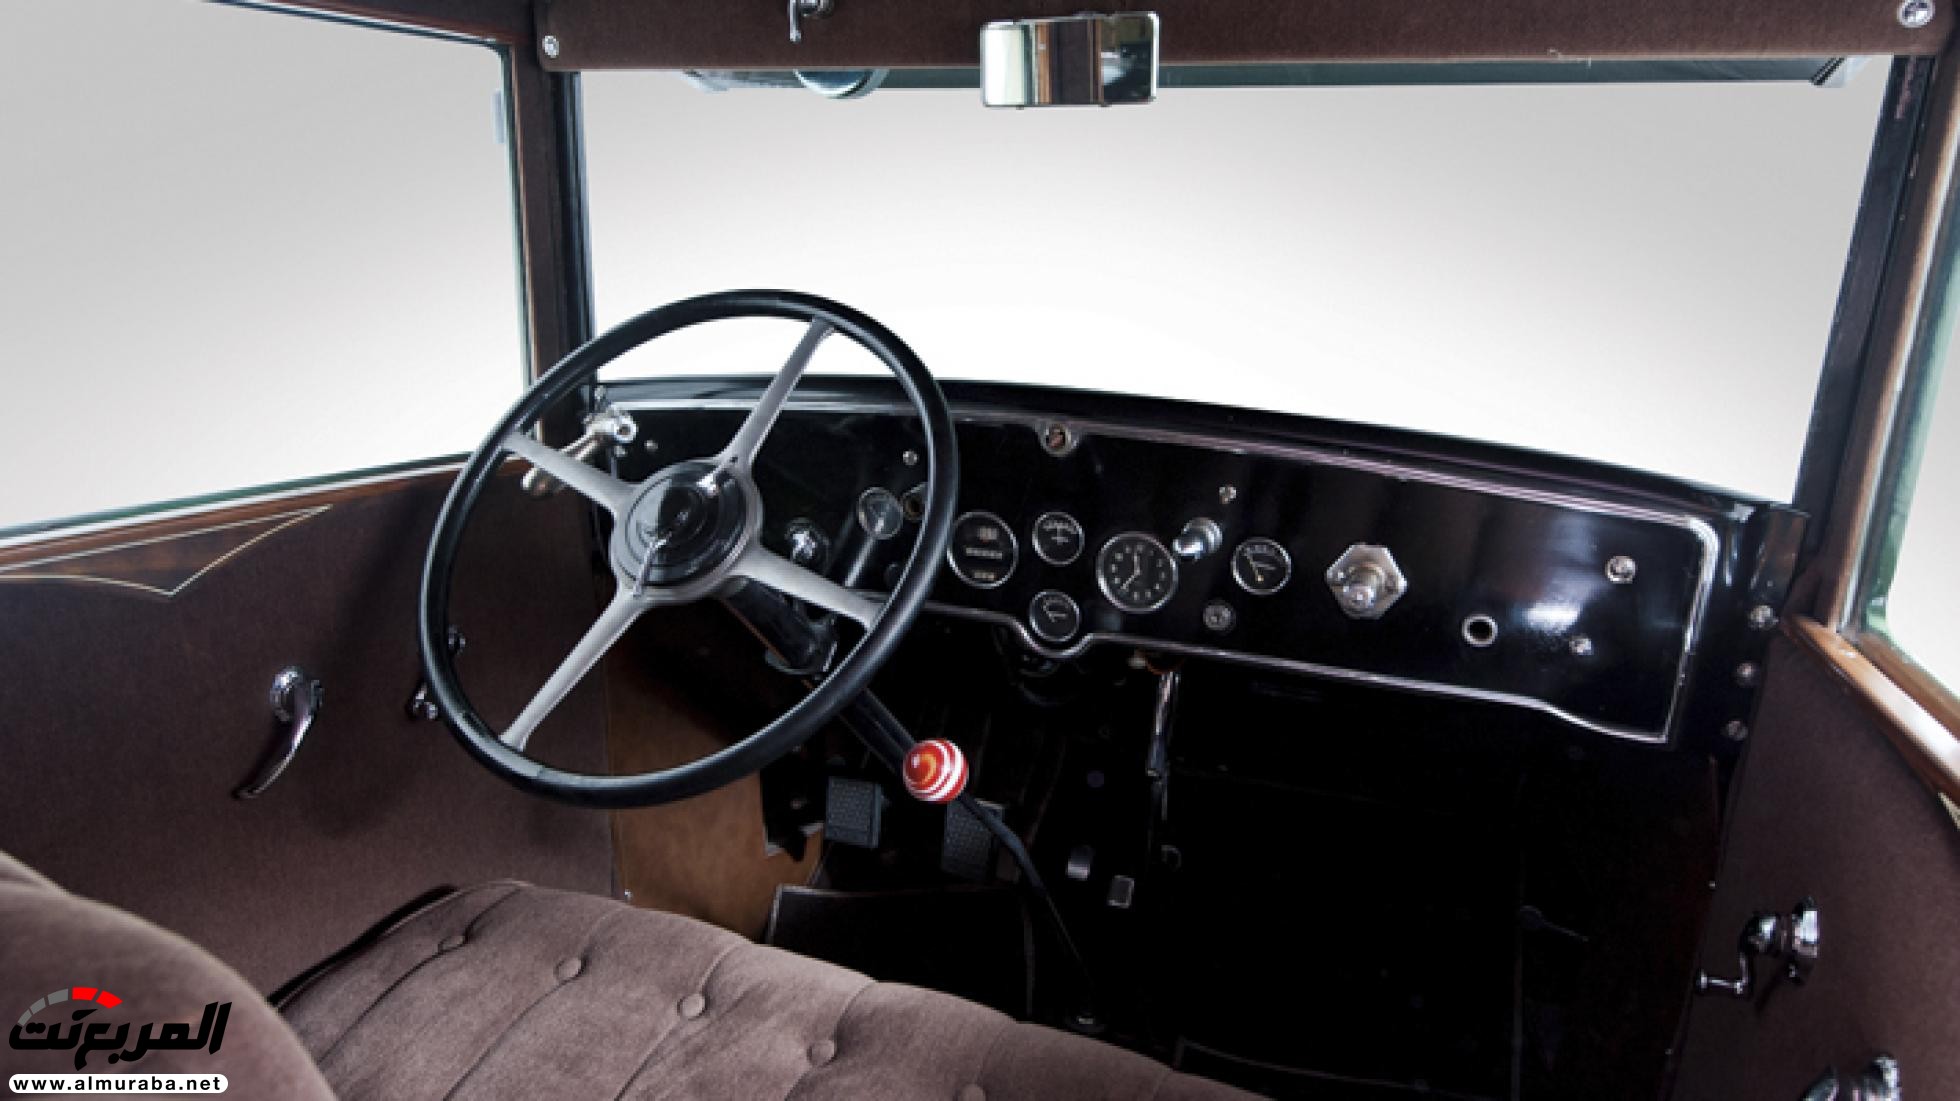 "بالصور" أول سيارة كاديلاك مصفحة بالتاريخ والتي امتلكها آل كابوني زعيم العصابات الأمريكية 7